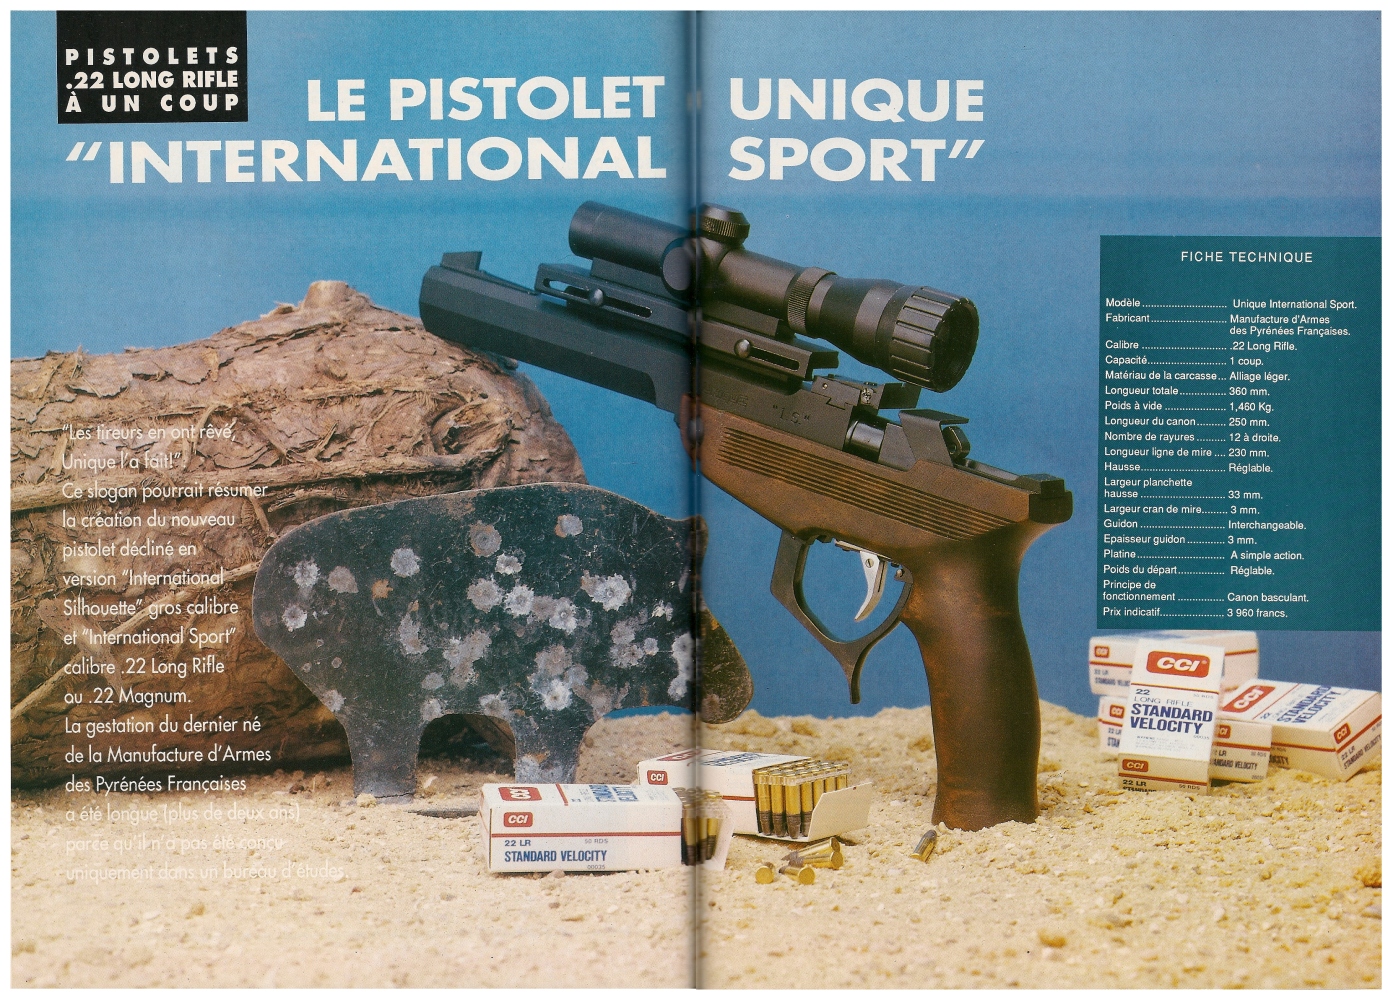 Le banc d'essai du pistolet Unique modèle IS a été publié sur 7 pages dans le magazine Action Guns n°150 (octobre 1992). 